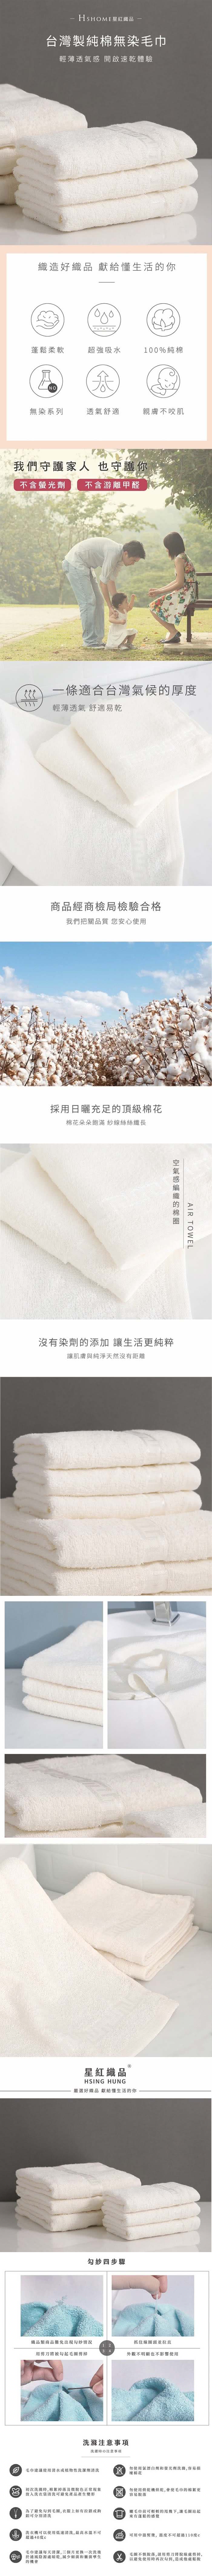 星紅織品 台灣製純棉無染毛巾-4入組 推薦